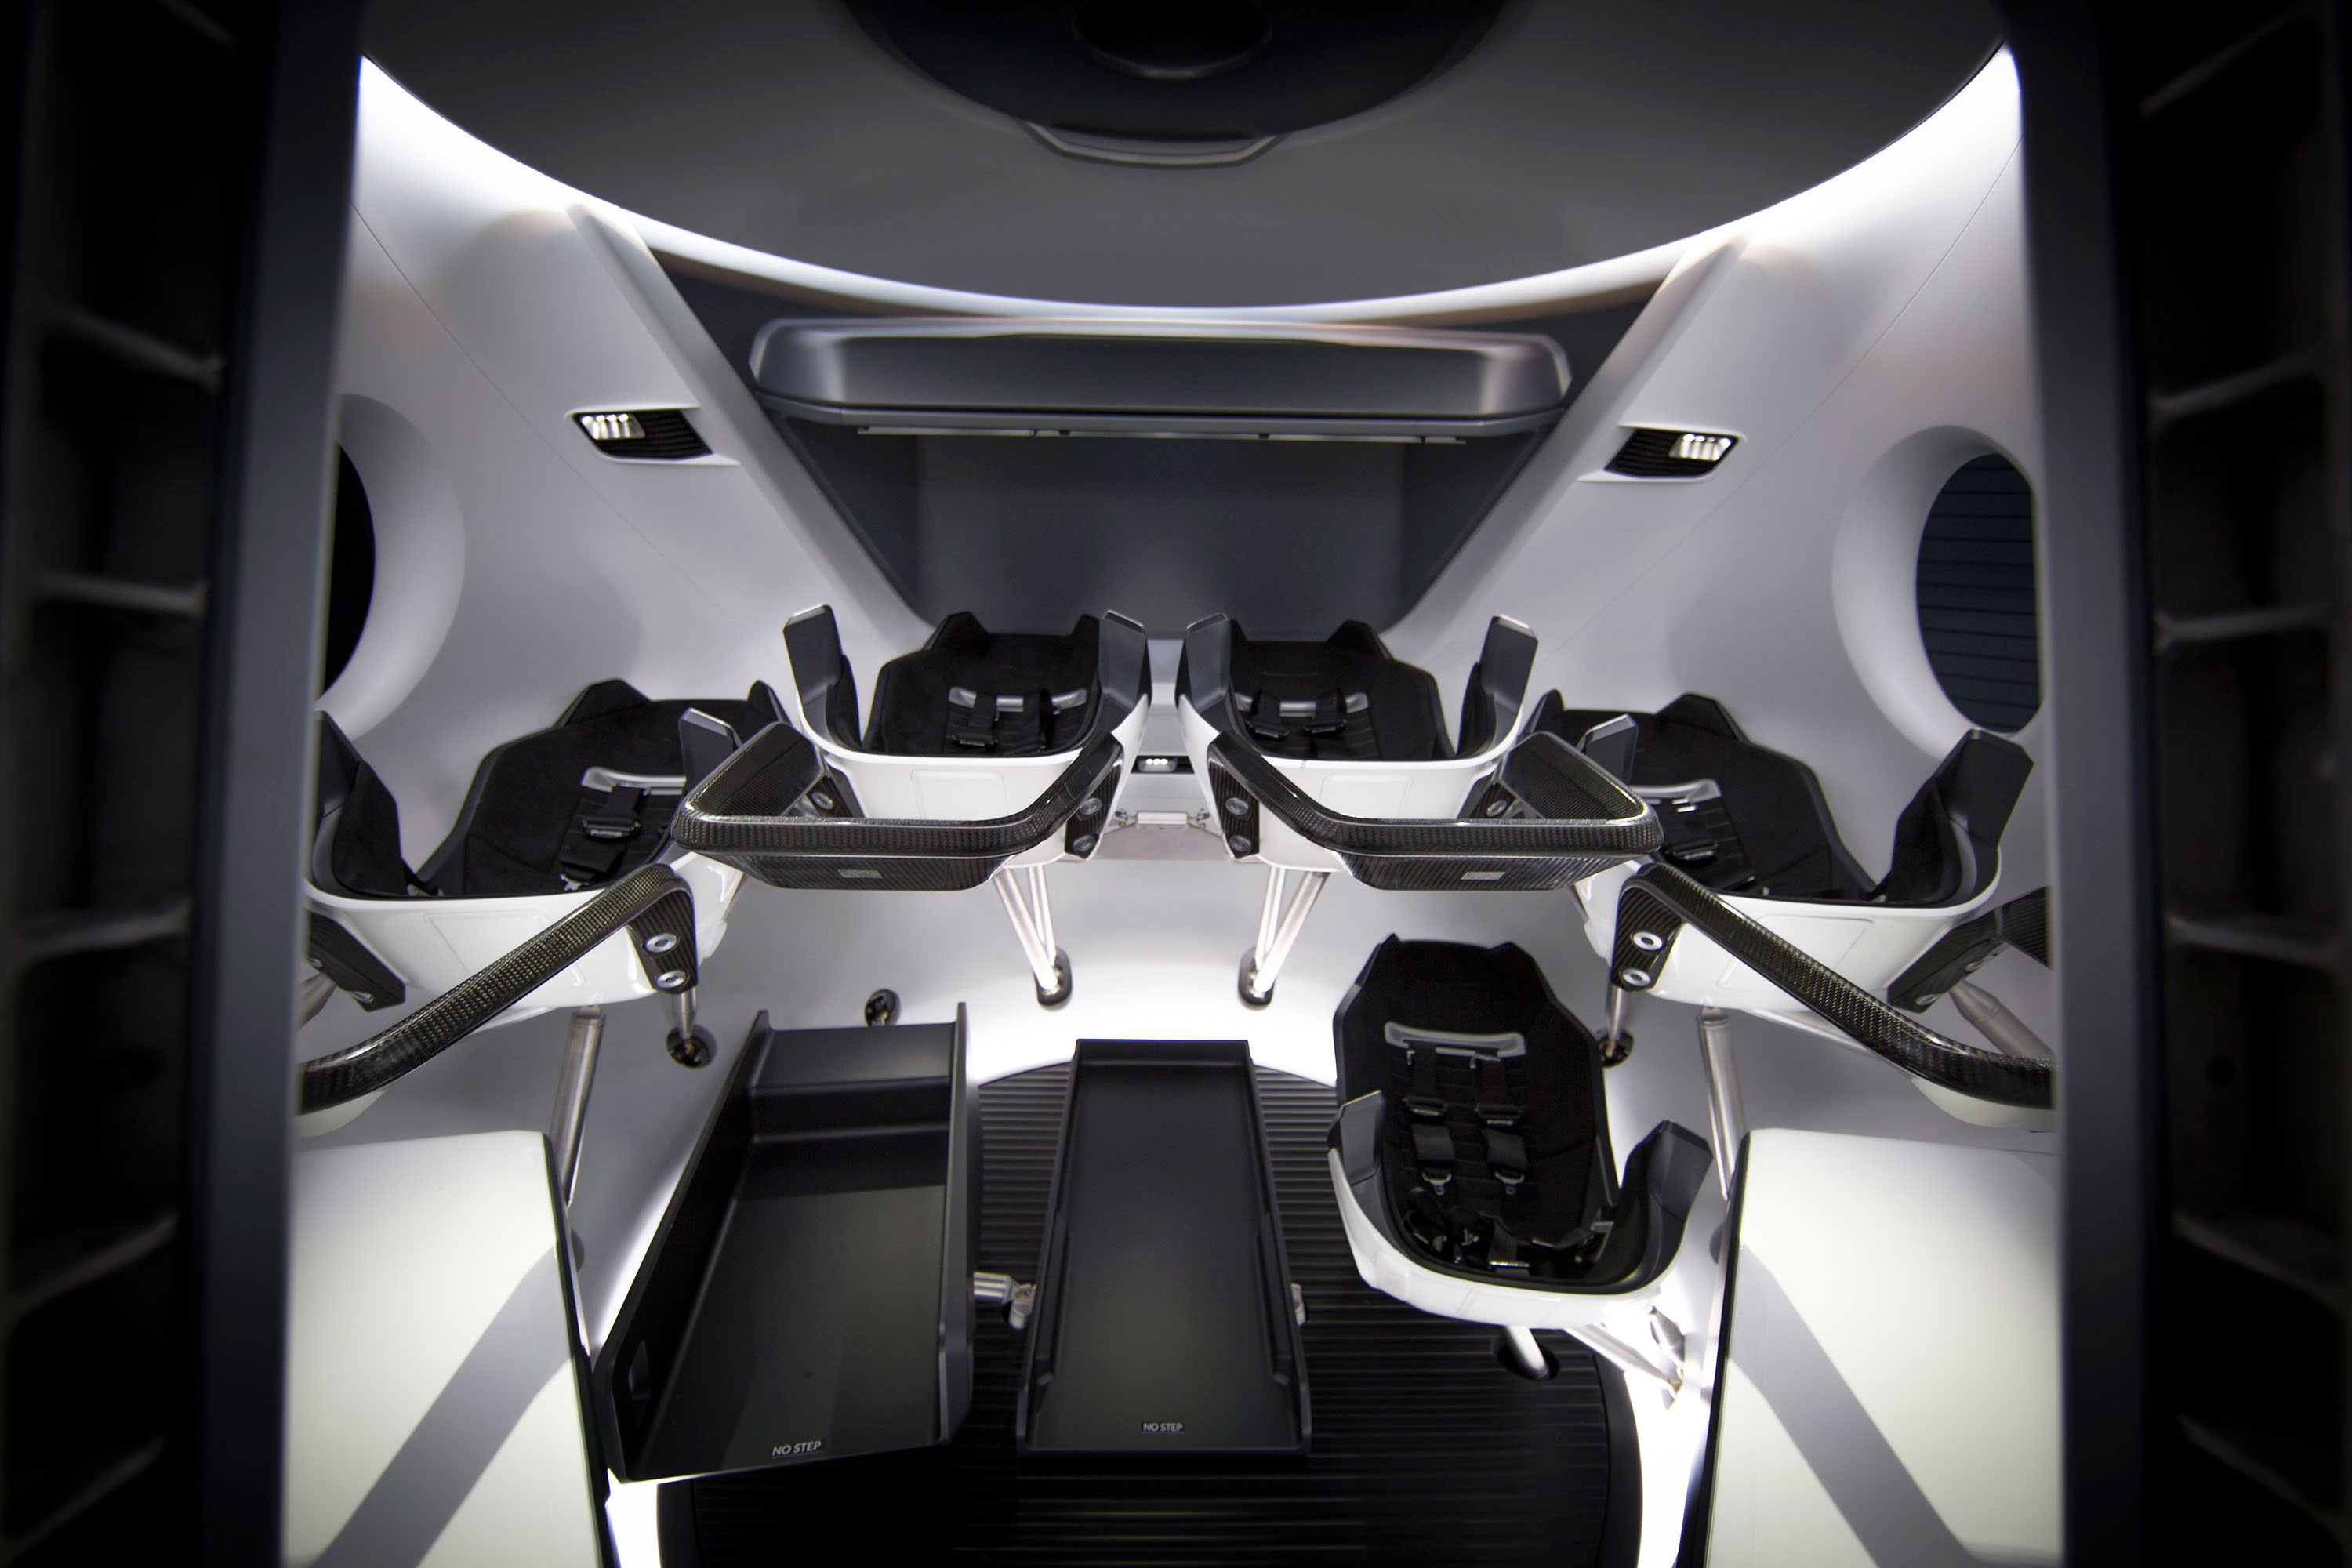 spacecraft interior design